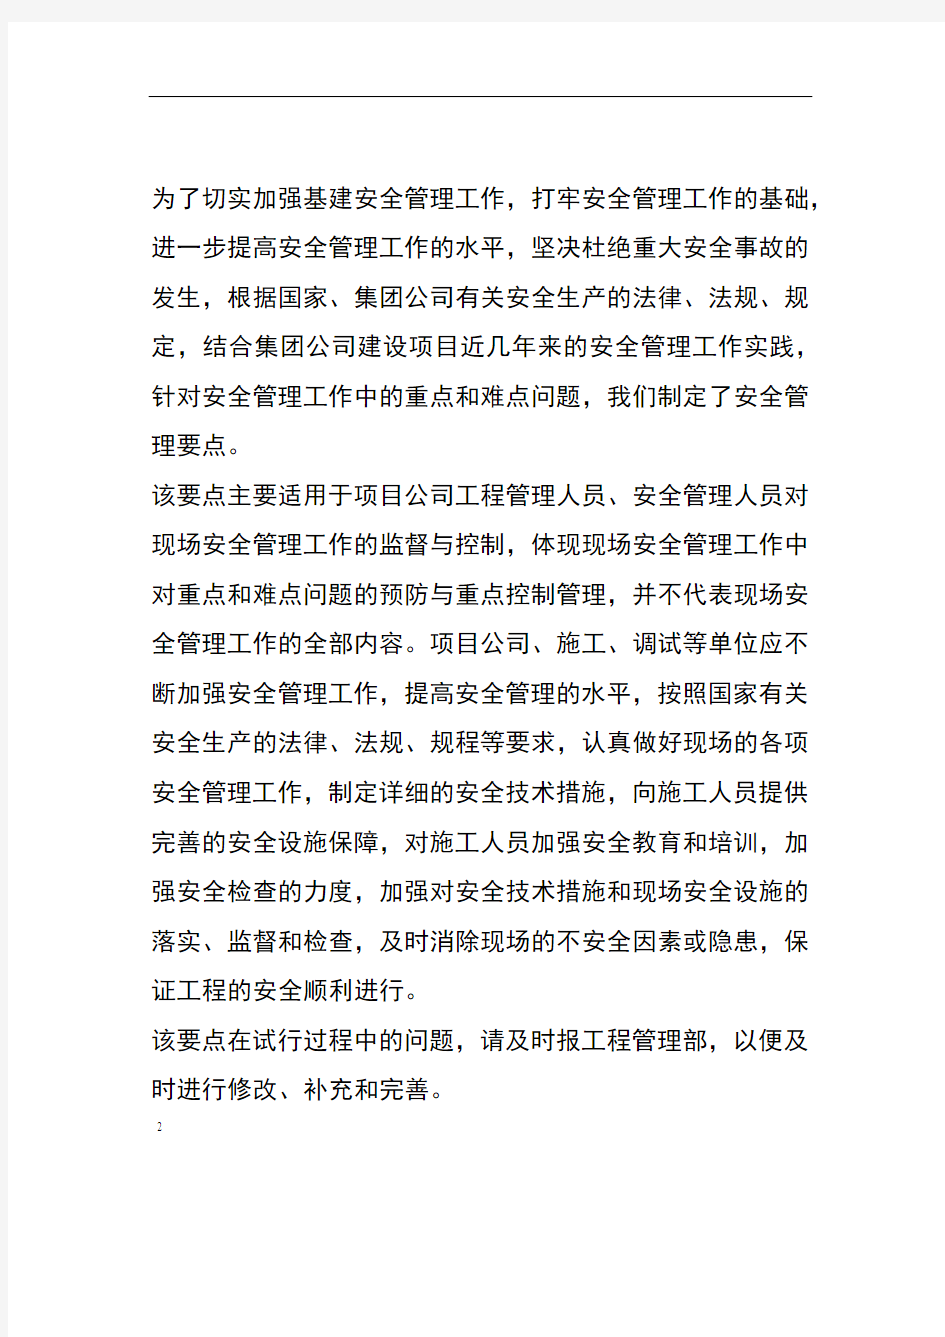 中国大唐集团公司工程建设安全技术及管理要点36页